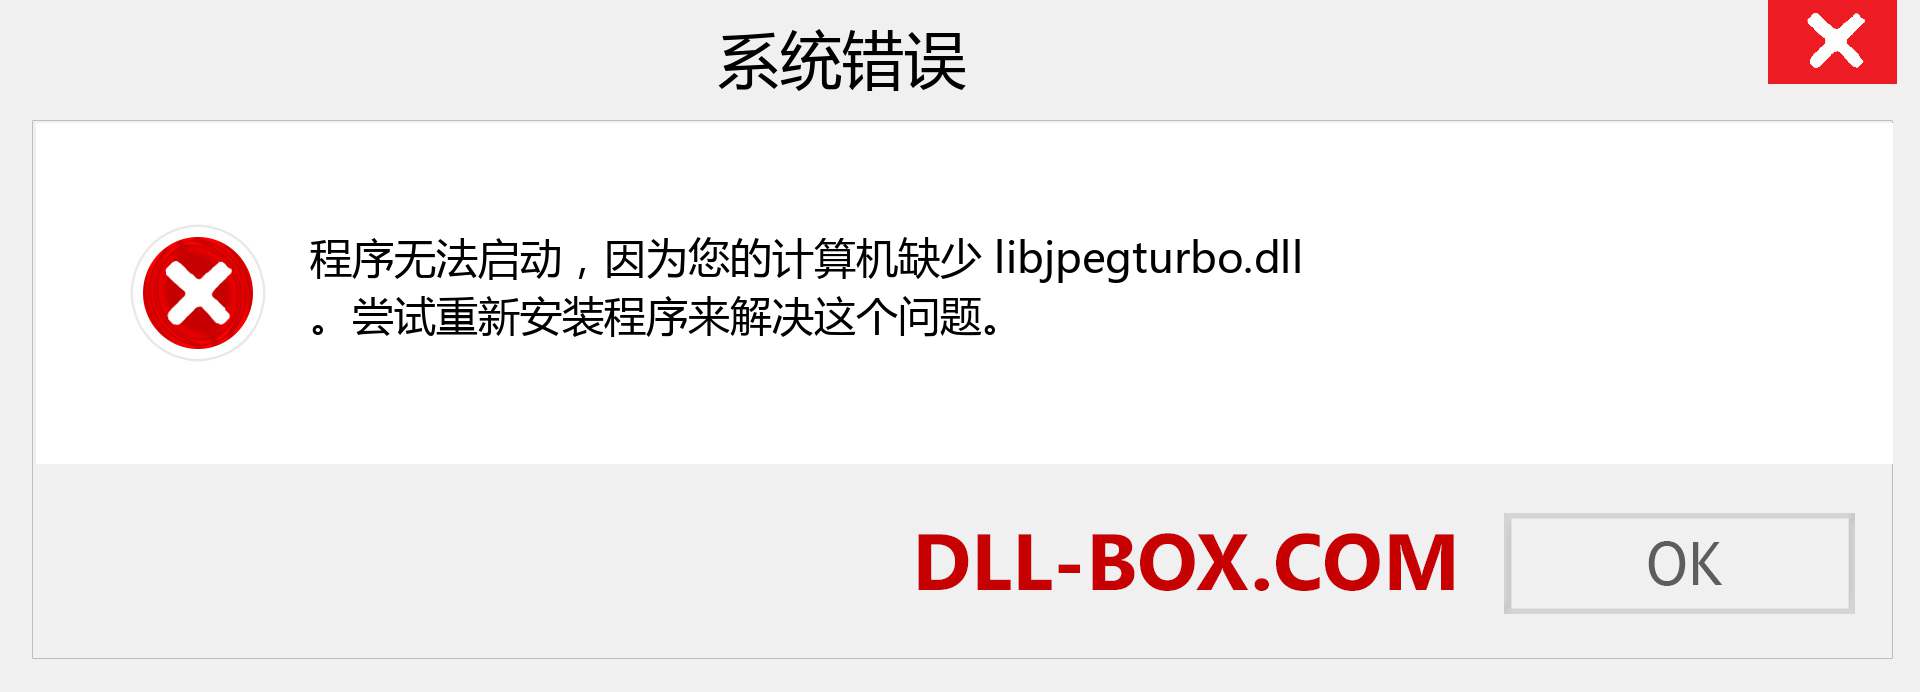 libjpegturbo.dll 文件丢失？。 适用于 Windows 7、8、10 的下载 - 修复 Windows、照片、图像上的 libjpegturbo dll 丢失错误